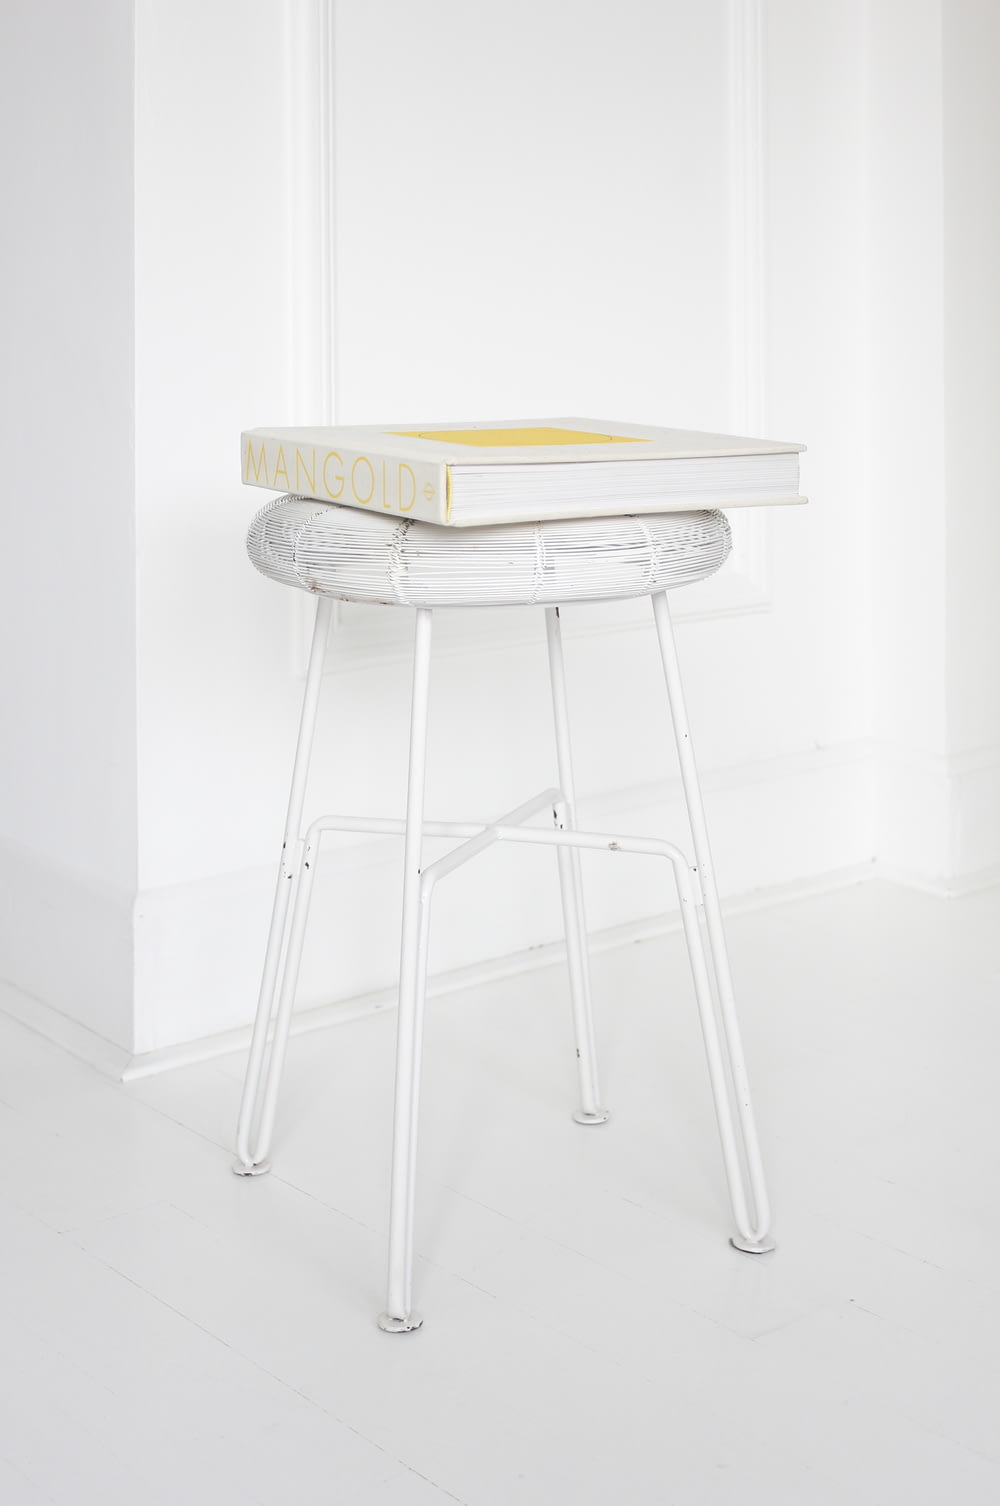 Mangold box on white stool